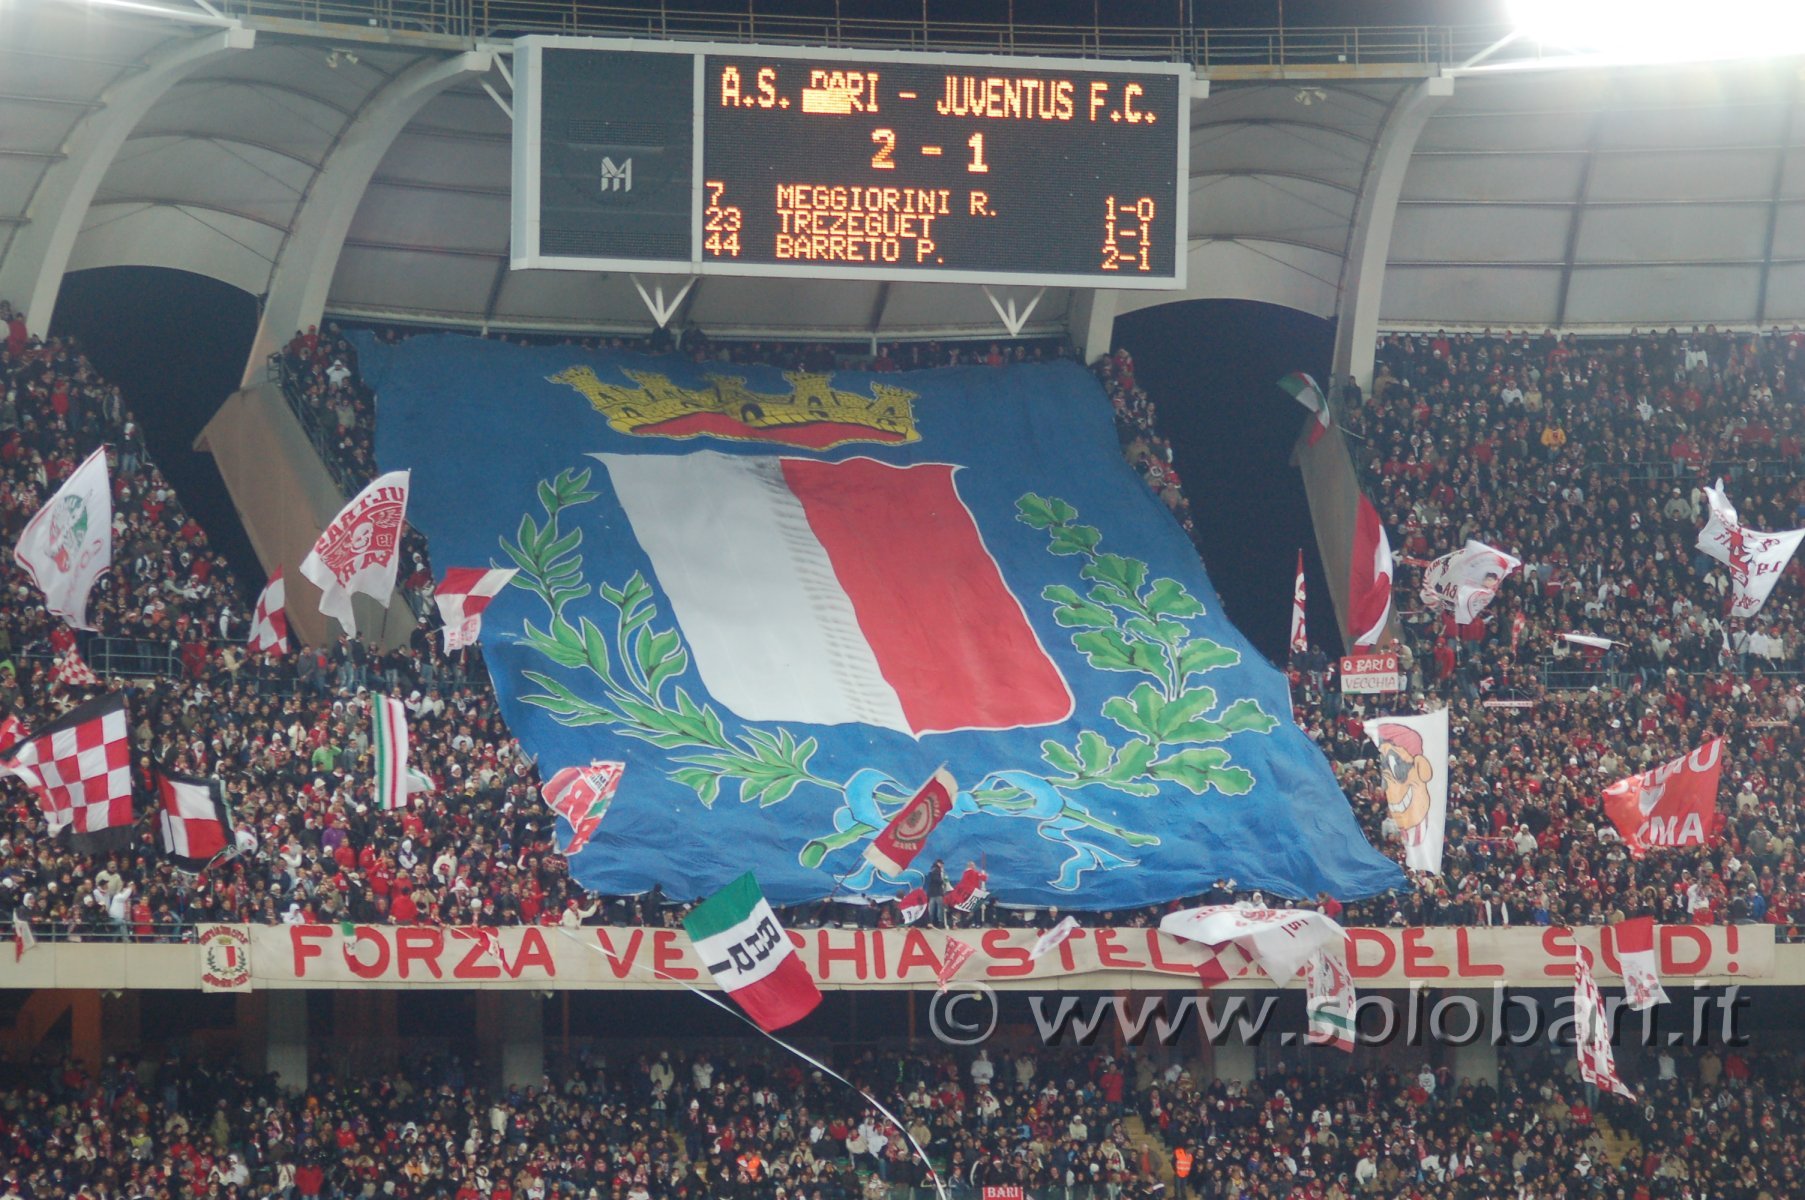 Bari-Juventus 09-10